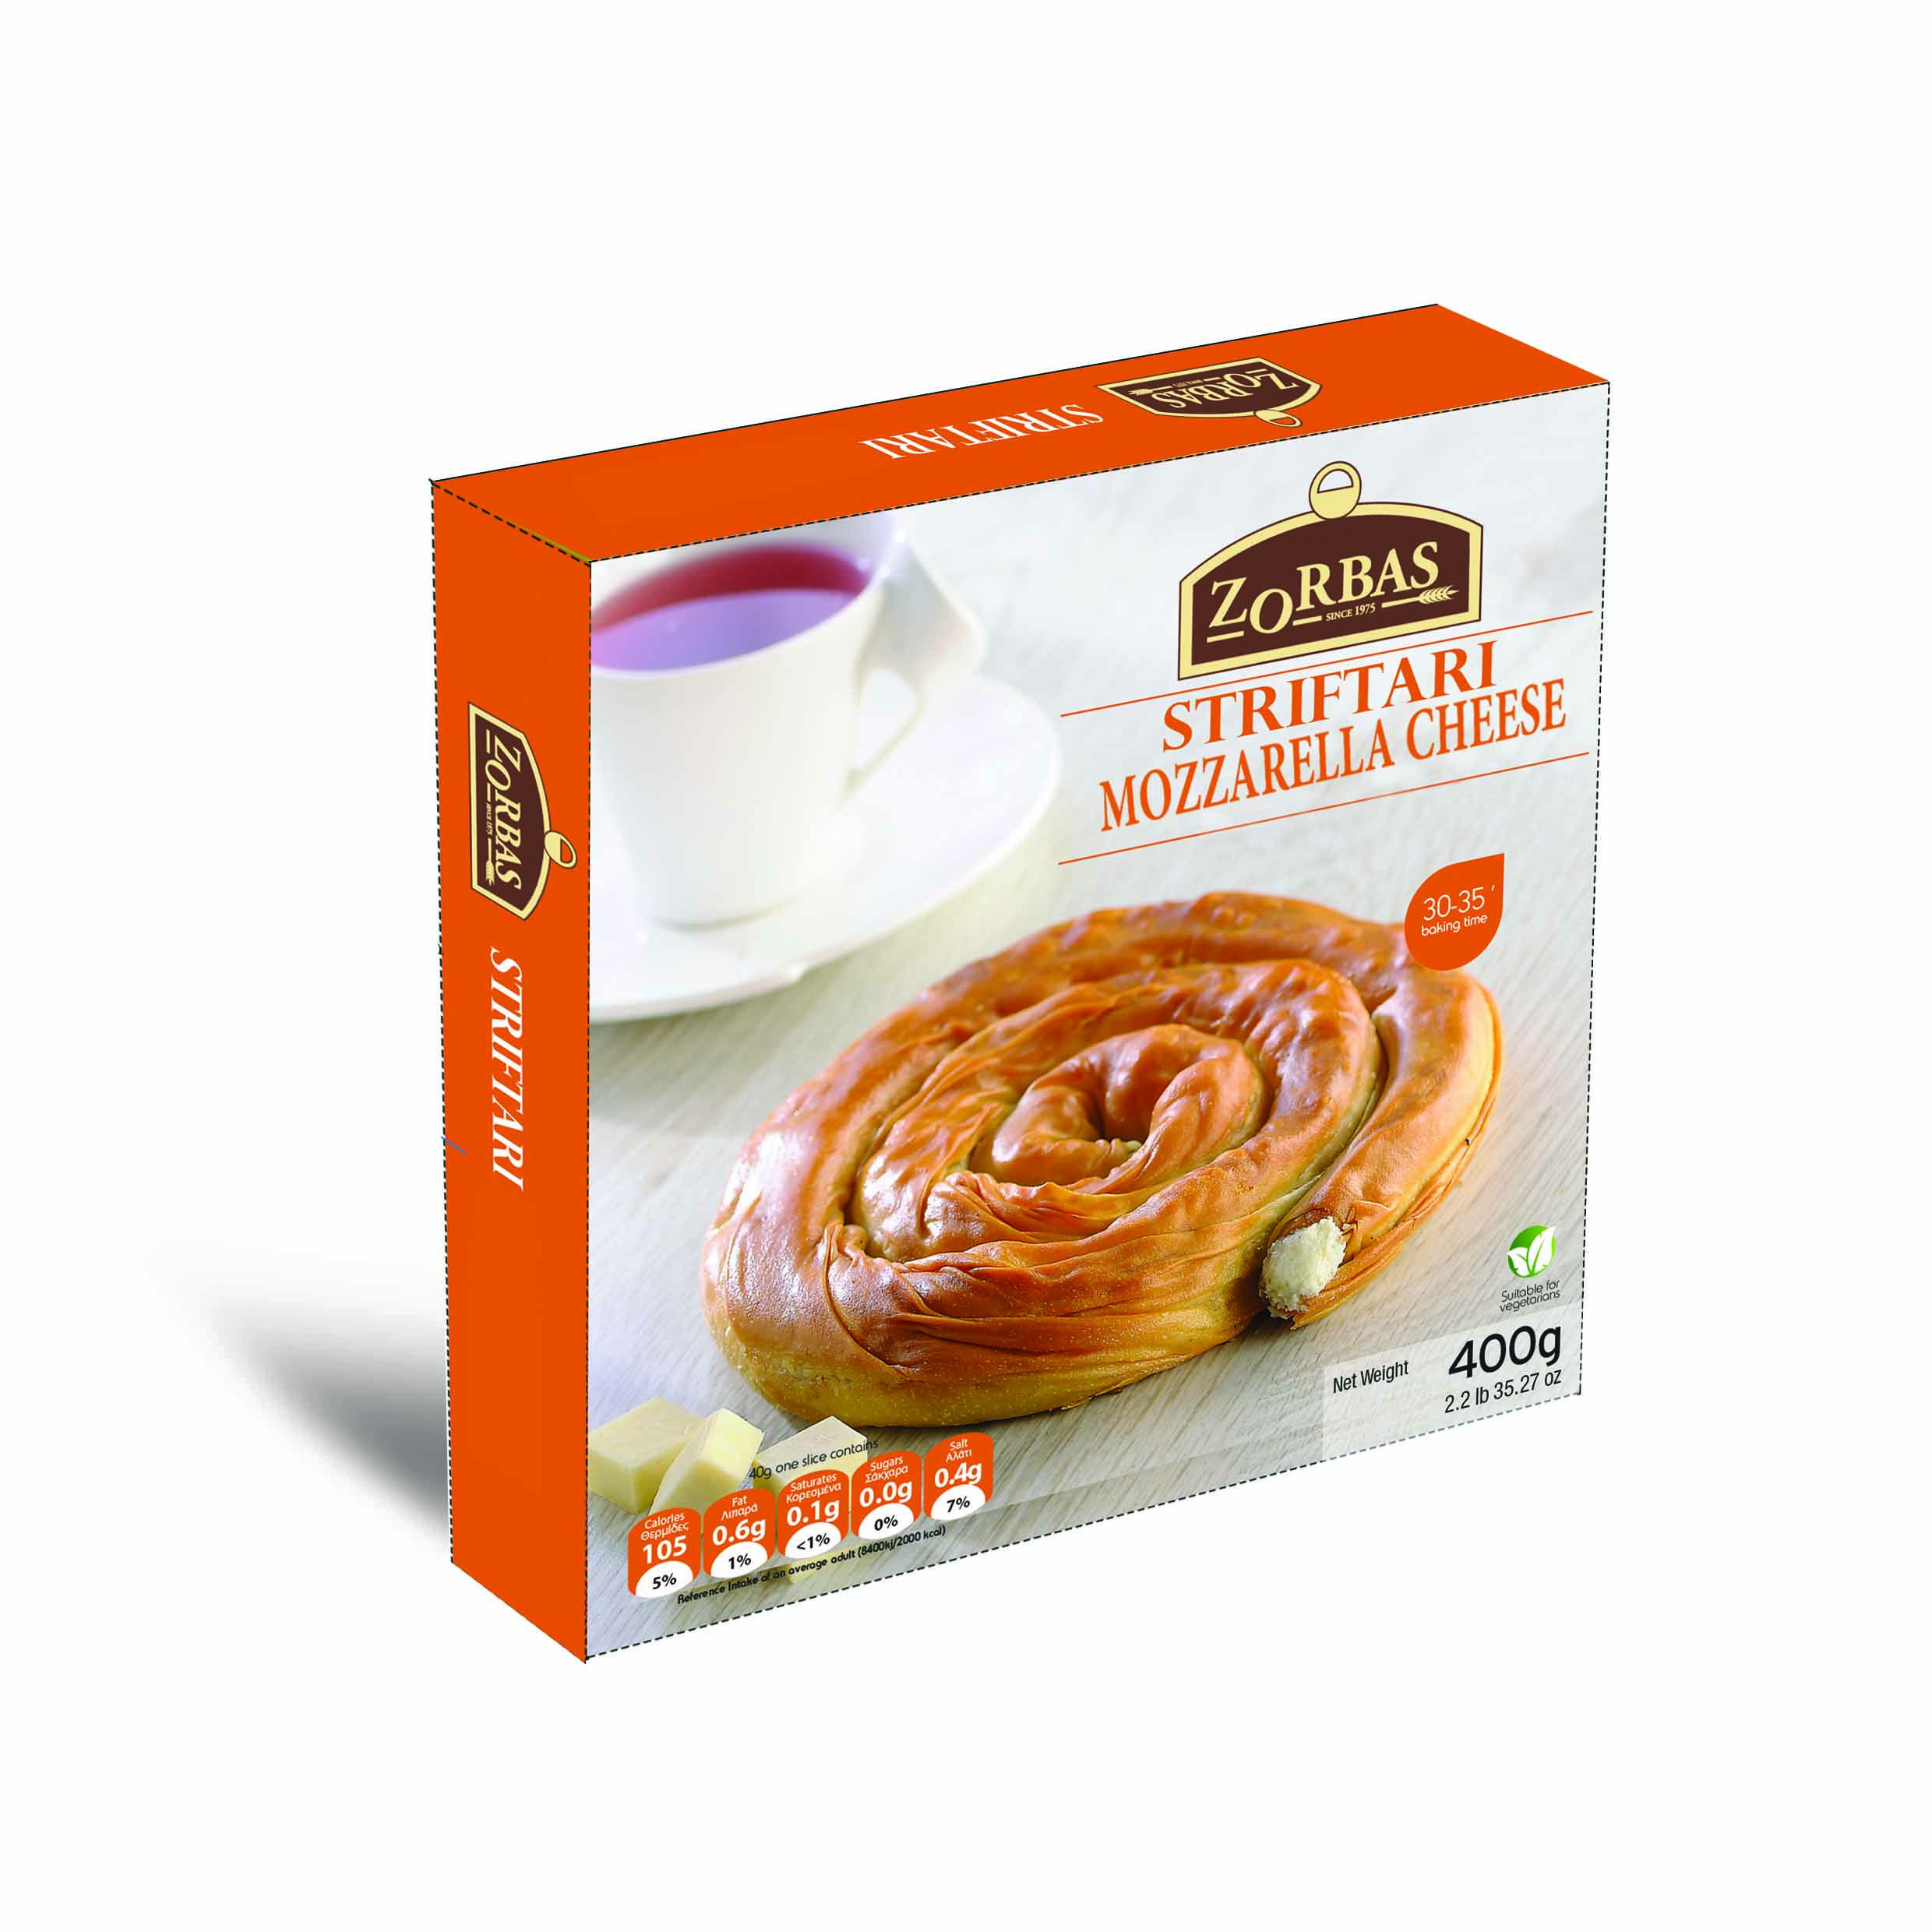 Mozzarella striftari/twist phyllo pie